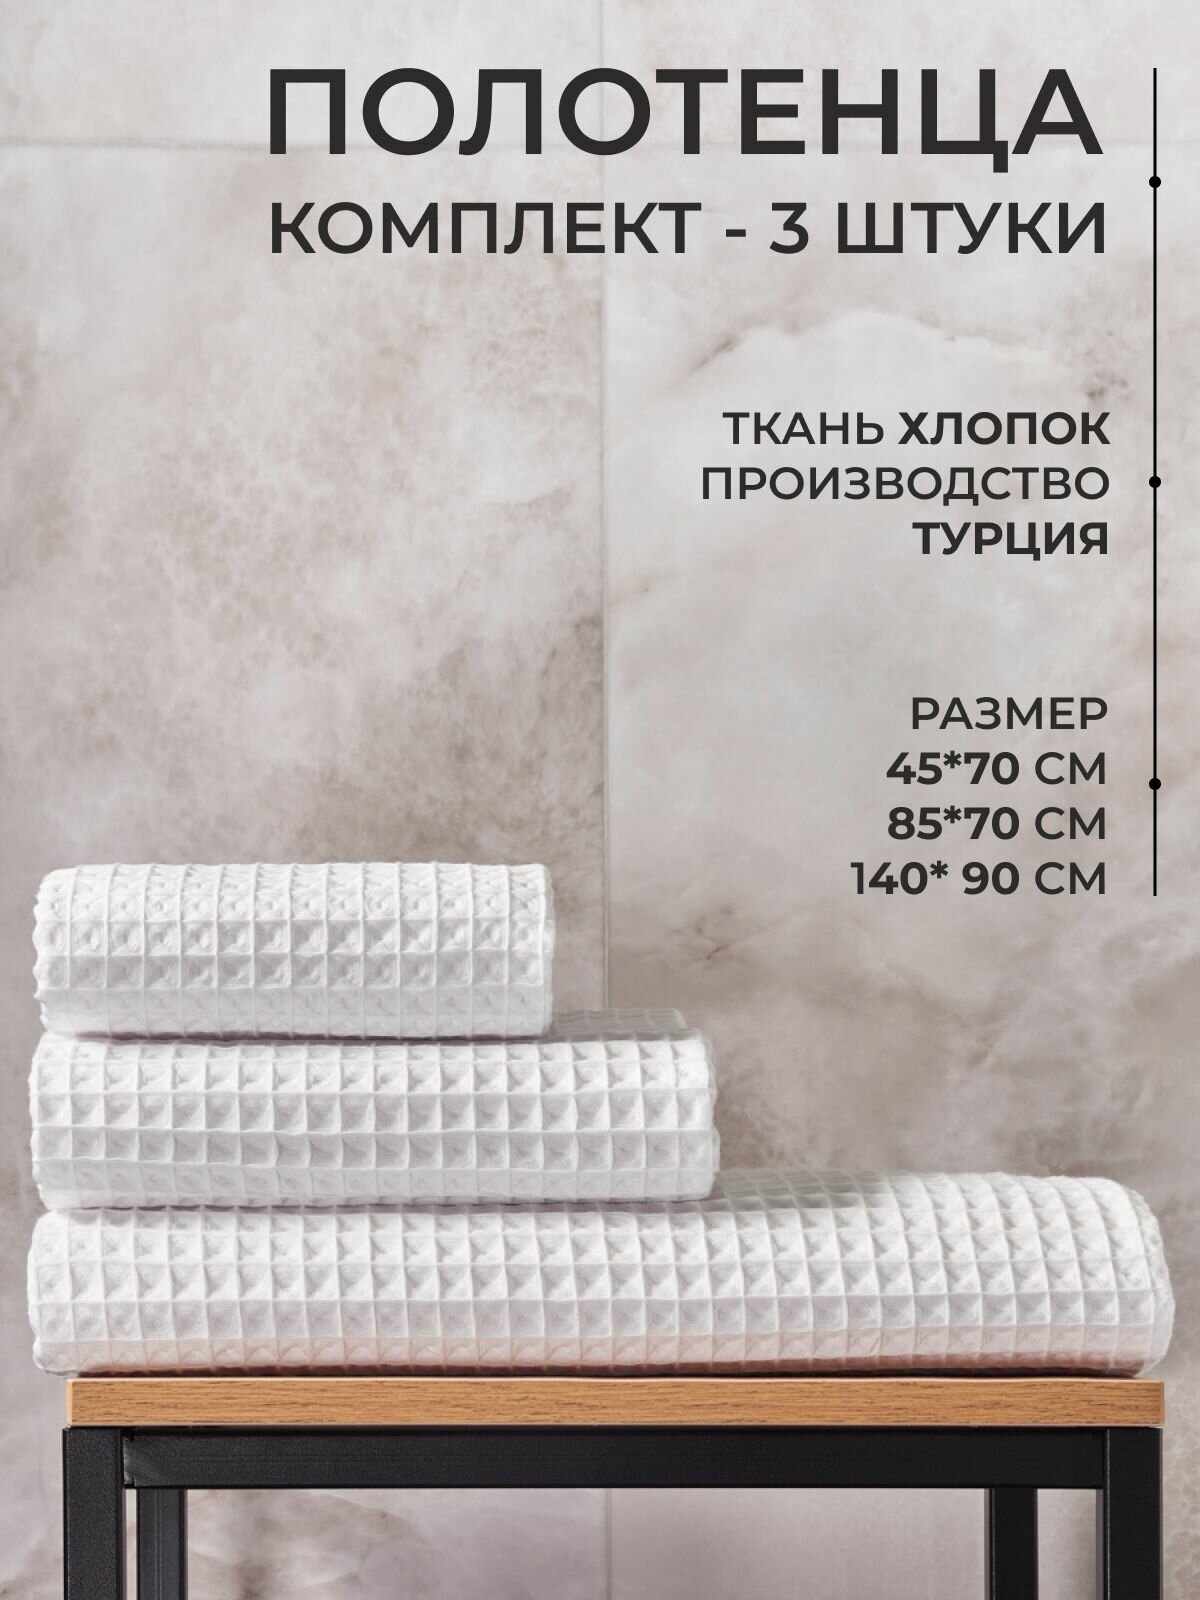 Комплект банных полотенец 3 шт (Турция)